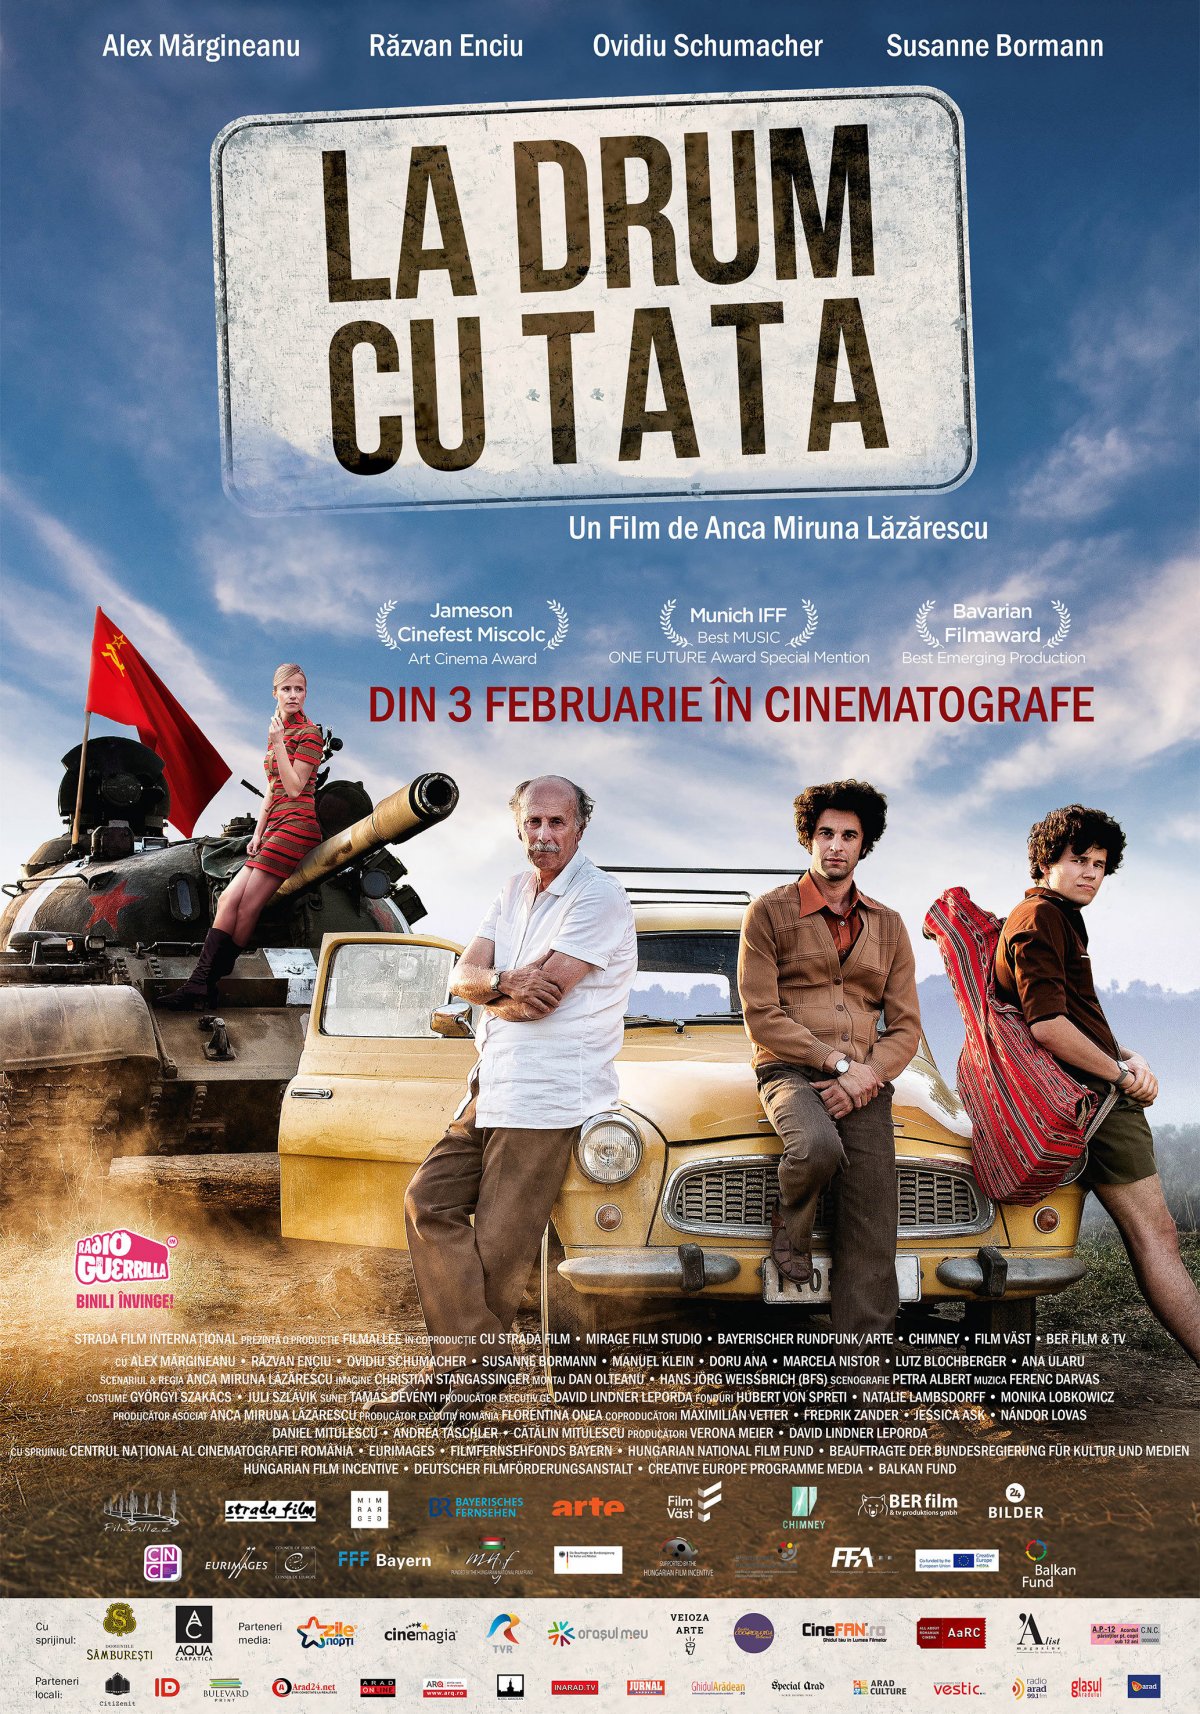 Echipa filmului La drum cu tata,  se întâlnește cu publicul din Arad pe 4 februarie la Cinema Arta